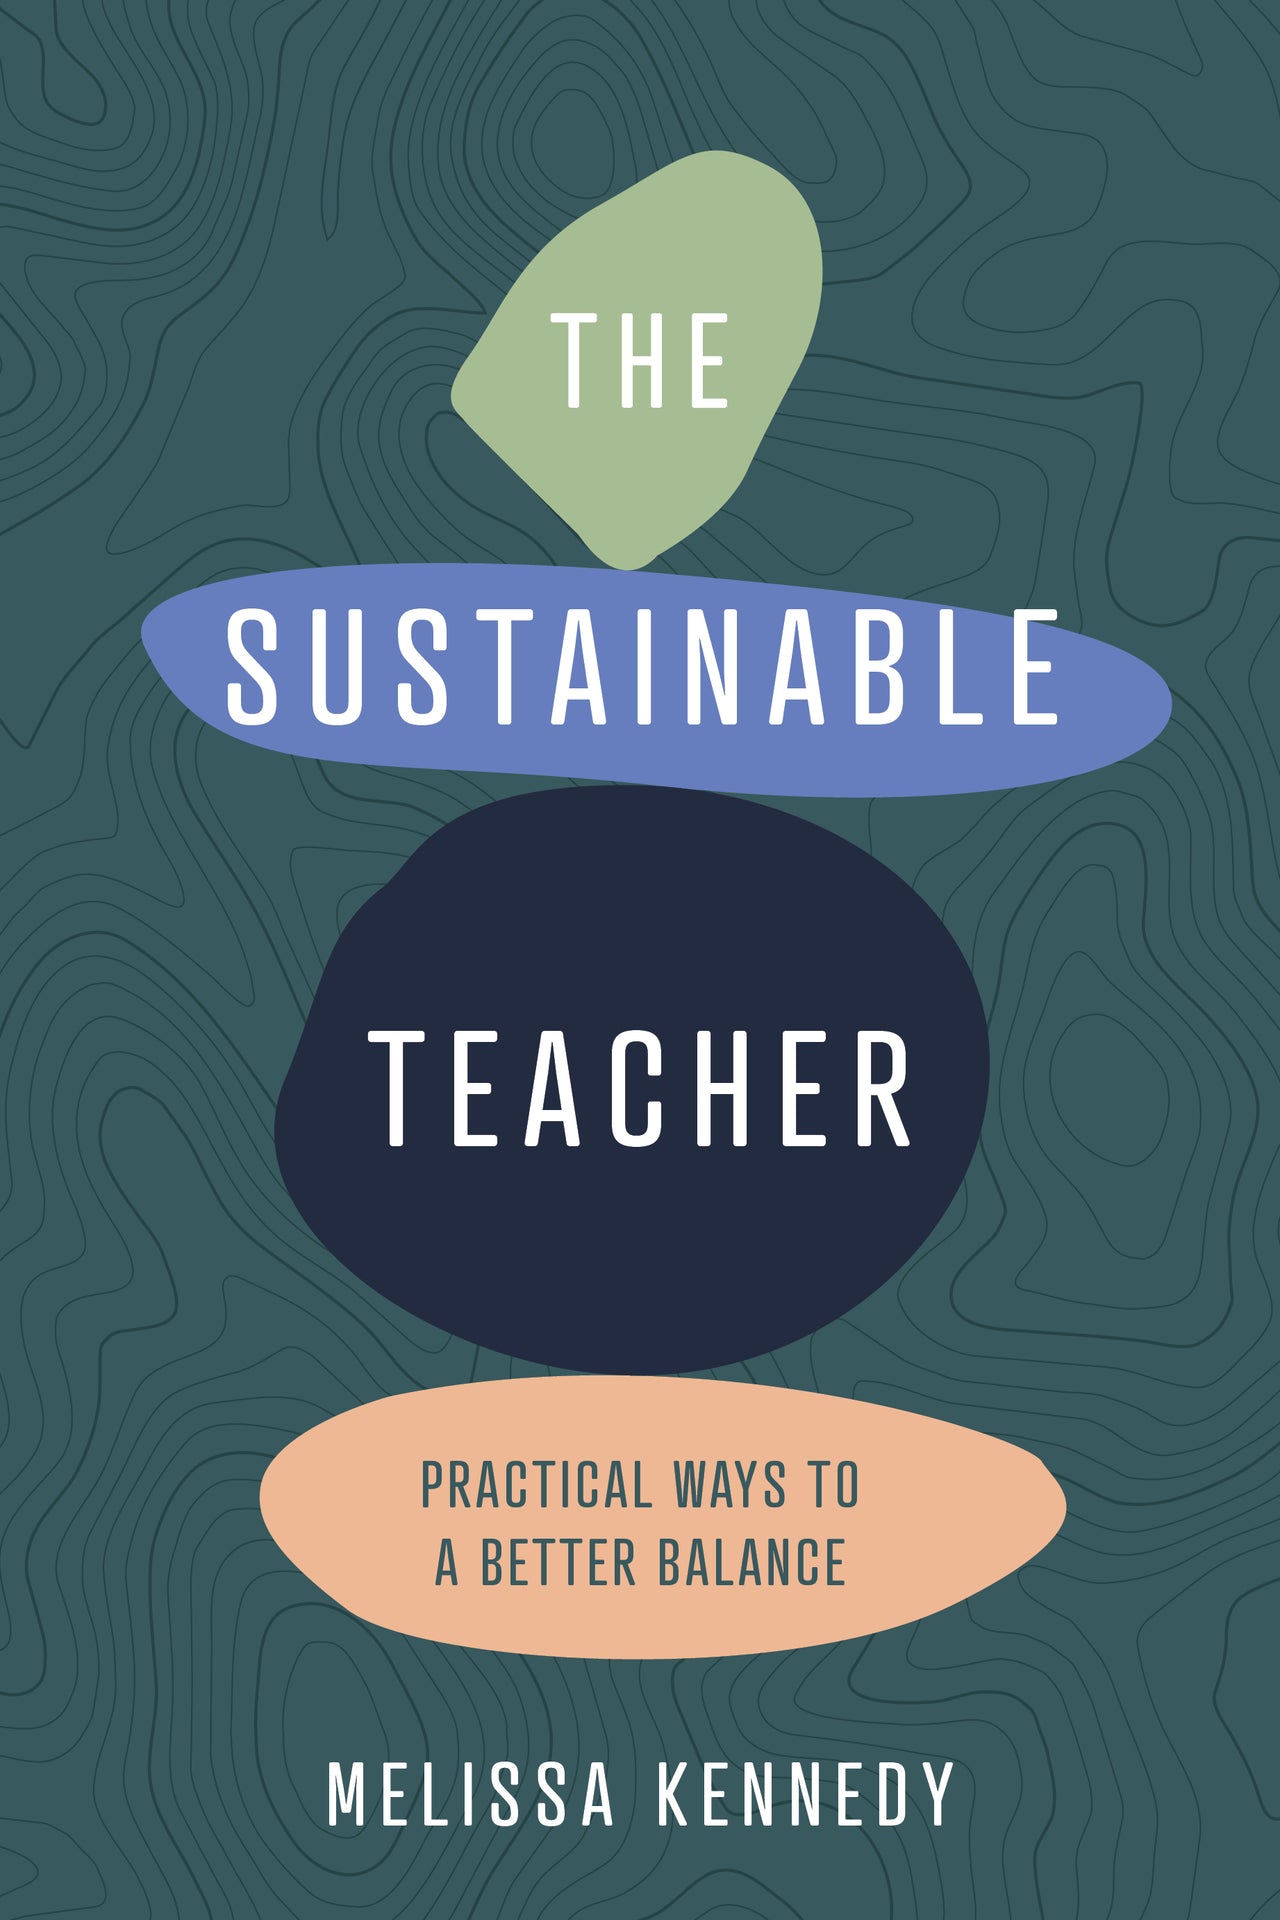 The Sustainable Teacher